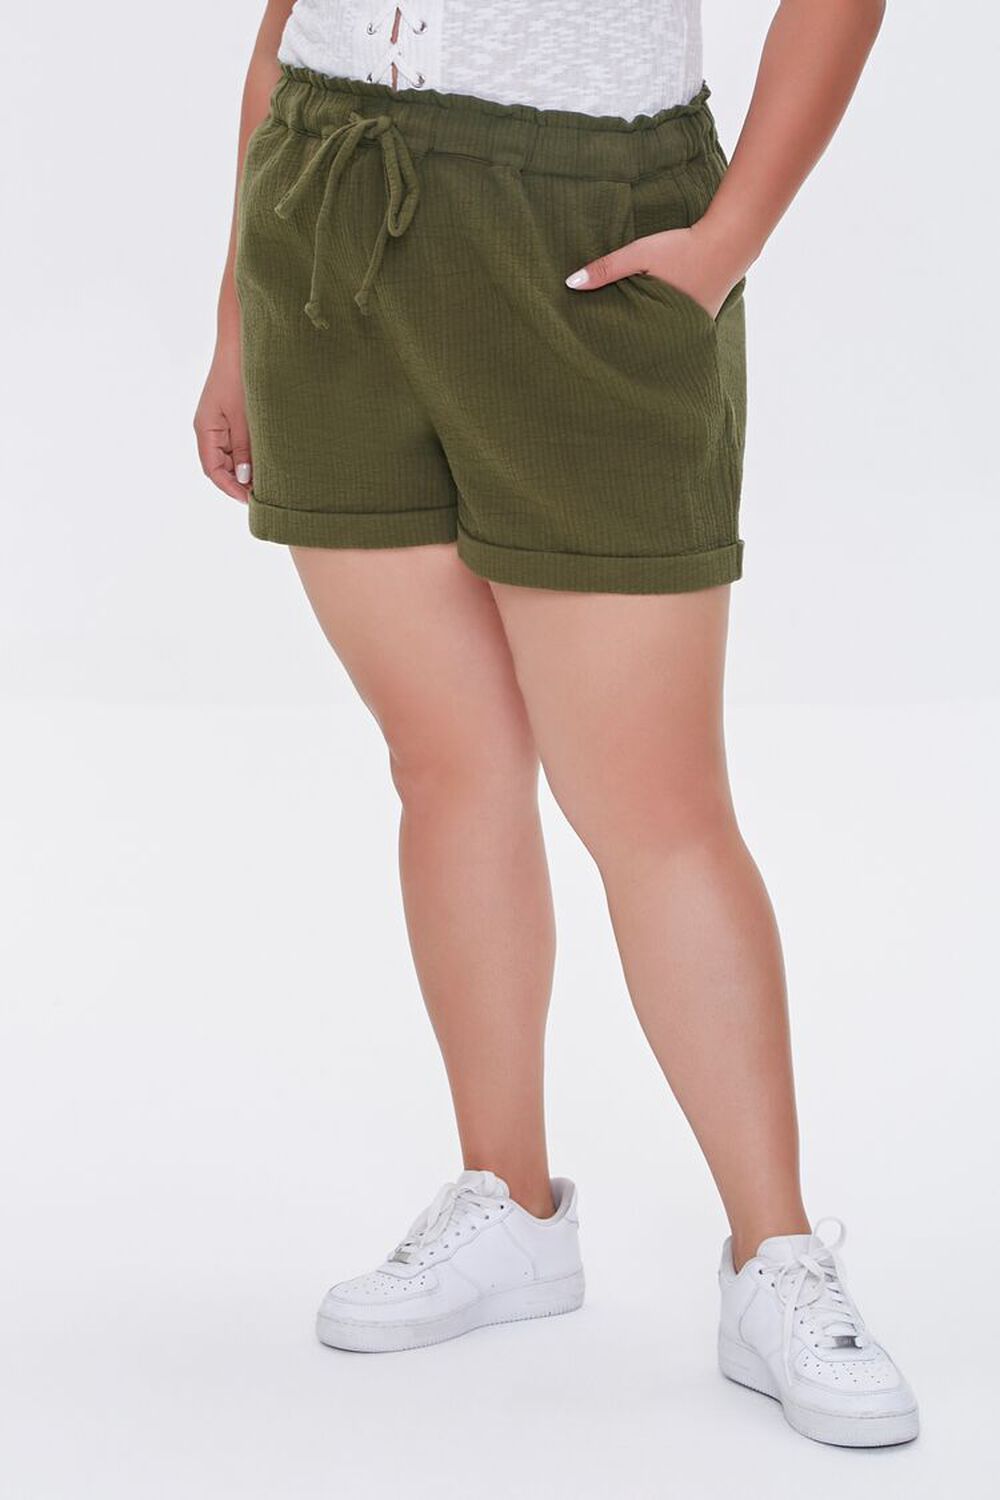 OLIVE Plus Size Textured Drawstring Shorts, image 2